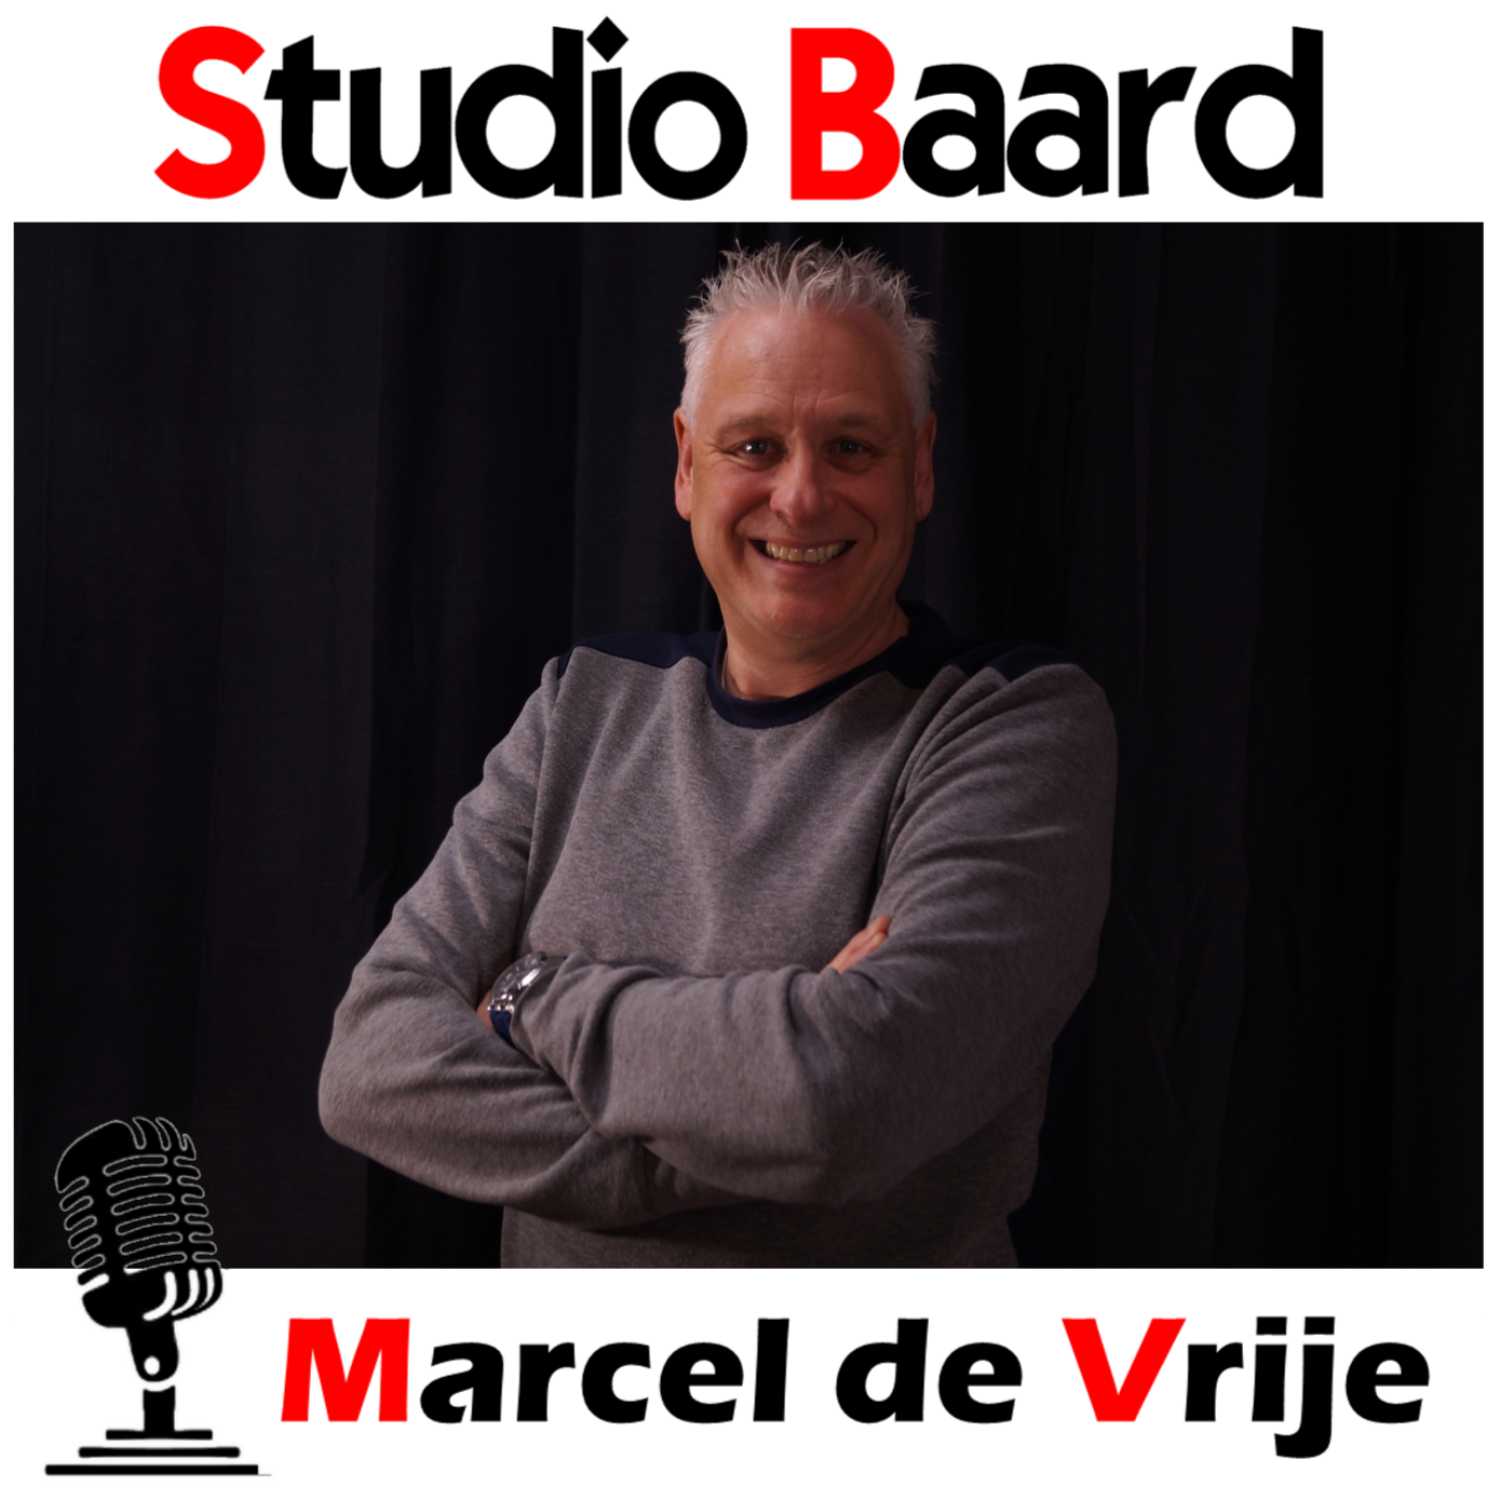 Studio Baard met Marcel de Vrije (deel 1)